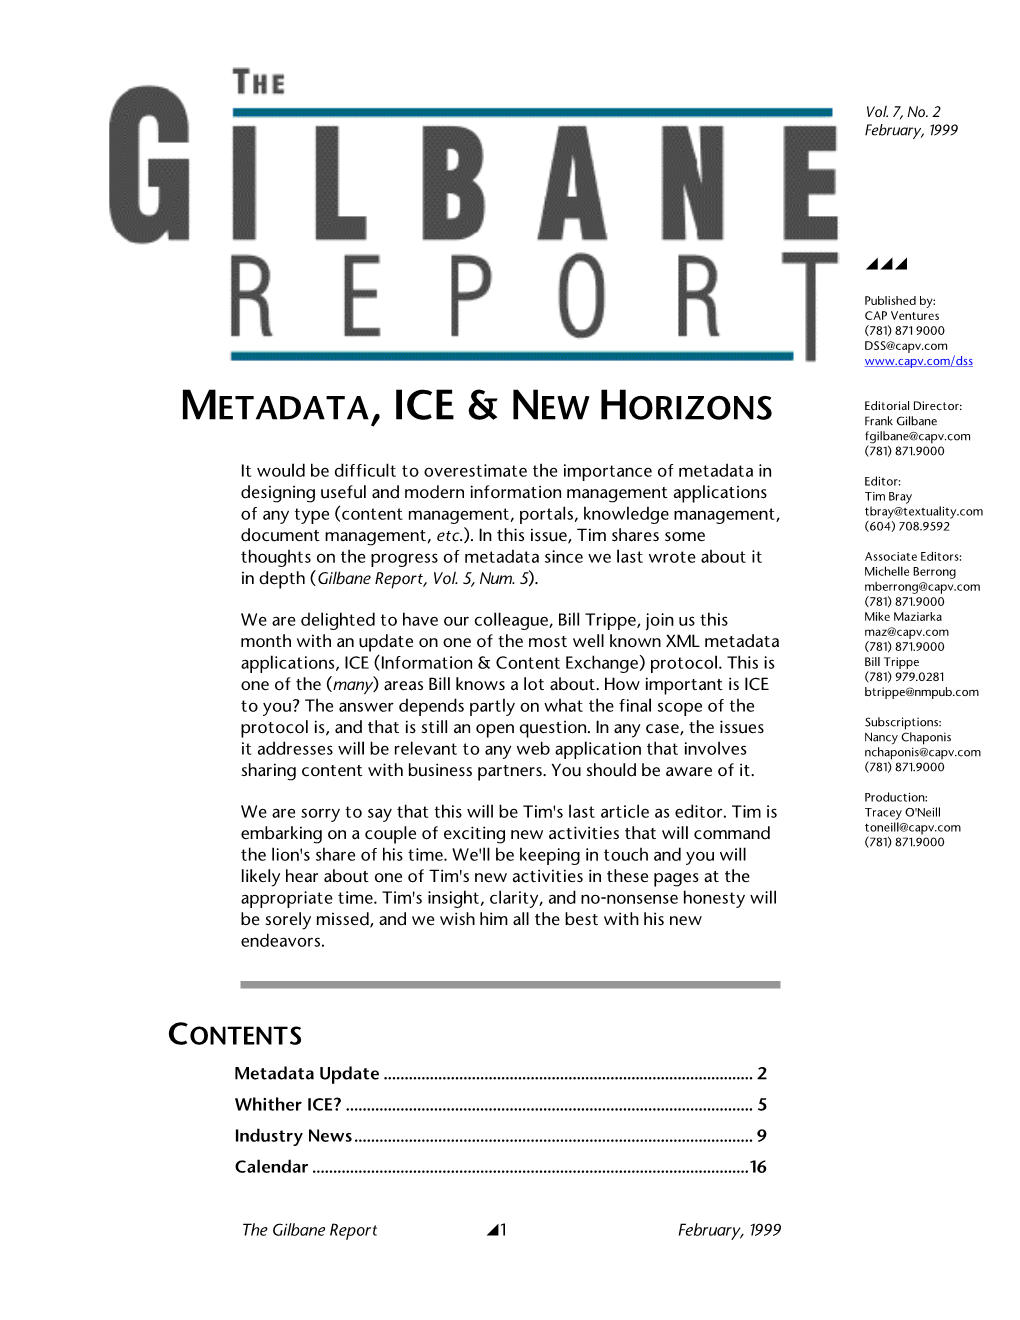 Metadata, ICE, & New Horizons